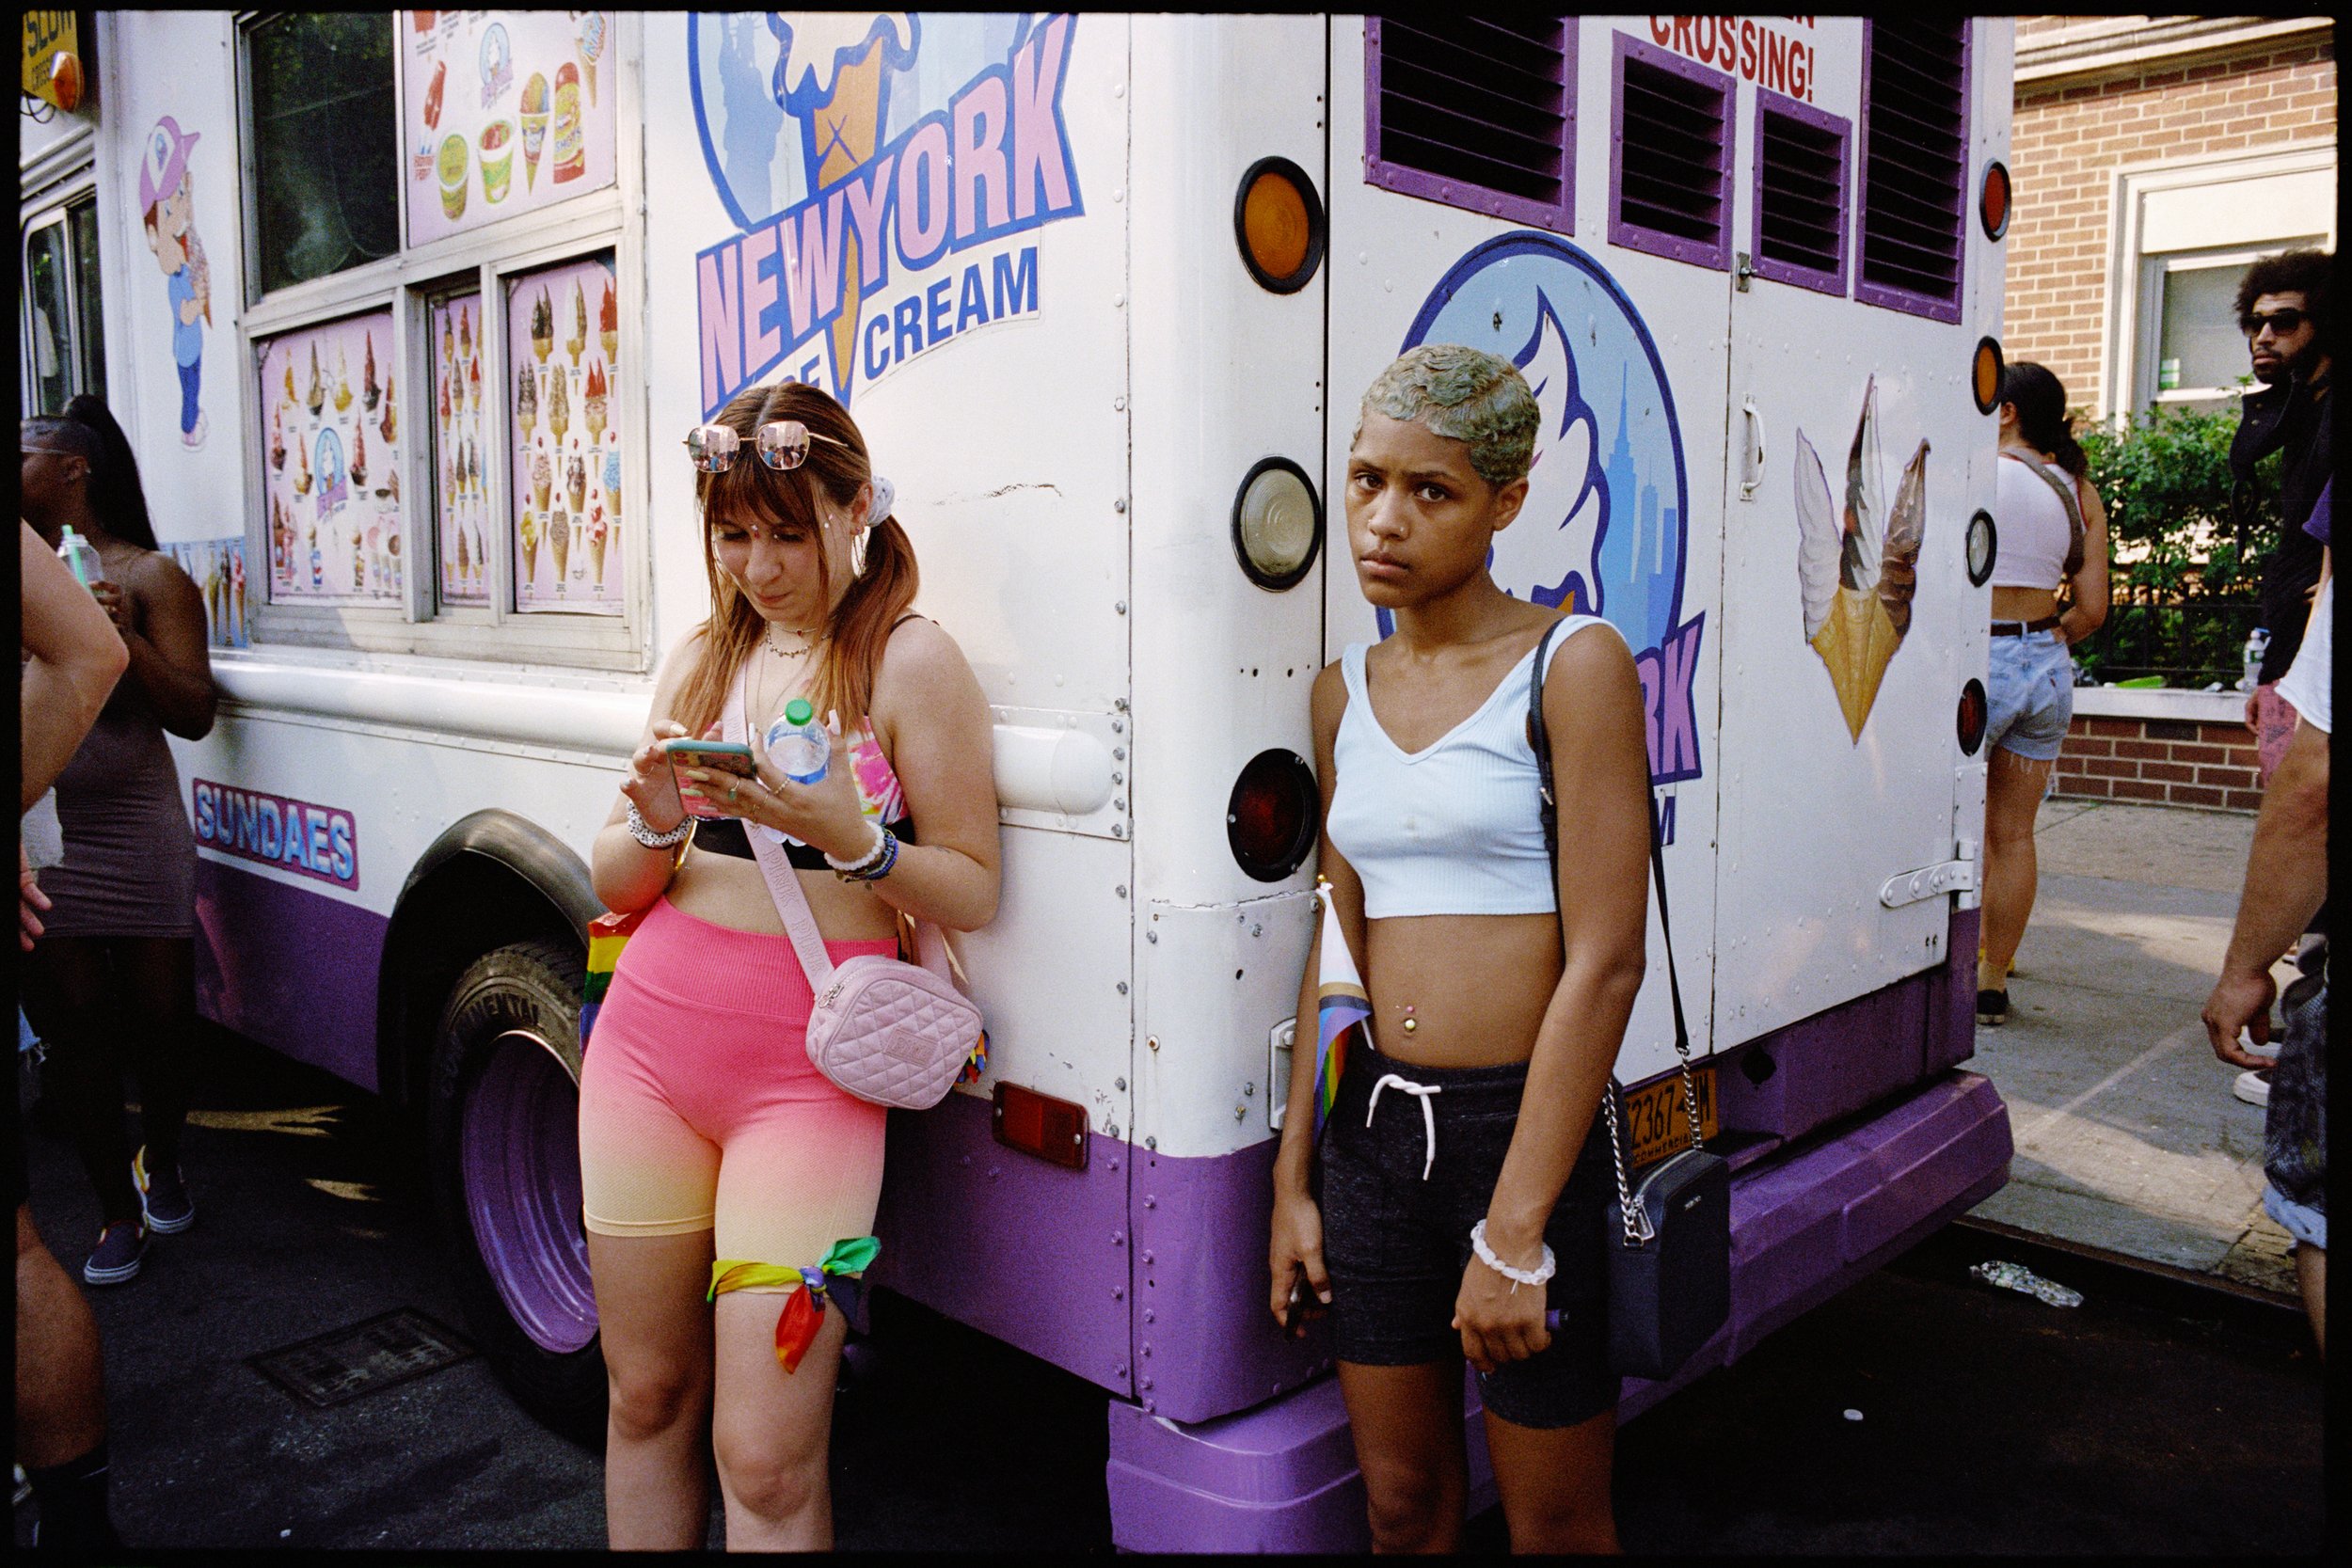 Ice cream truck duo 001.jpg